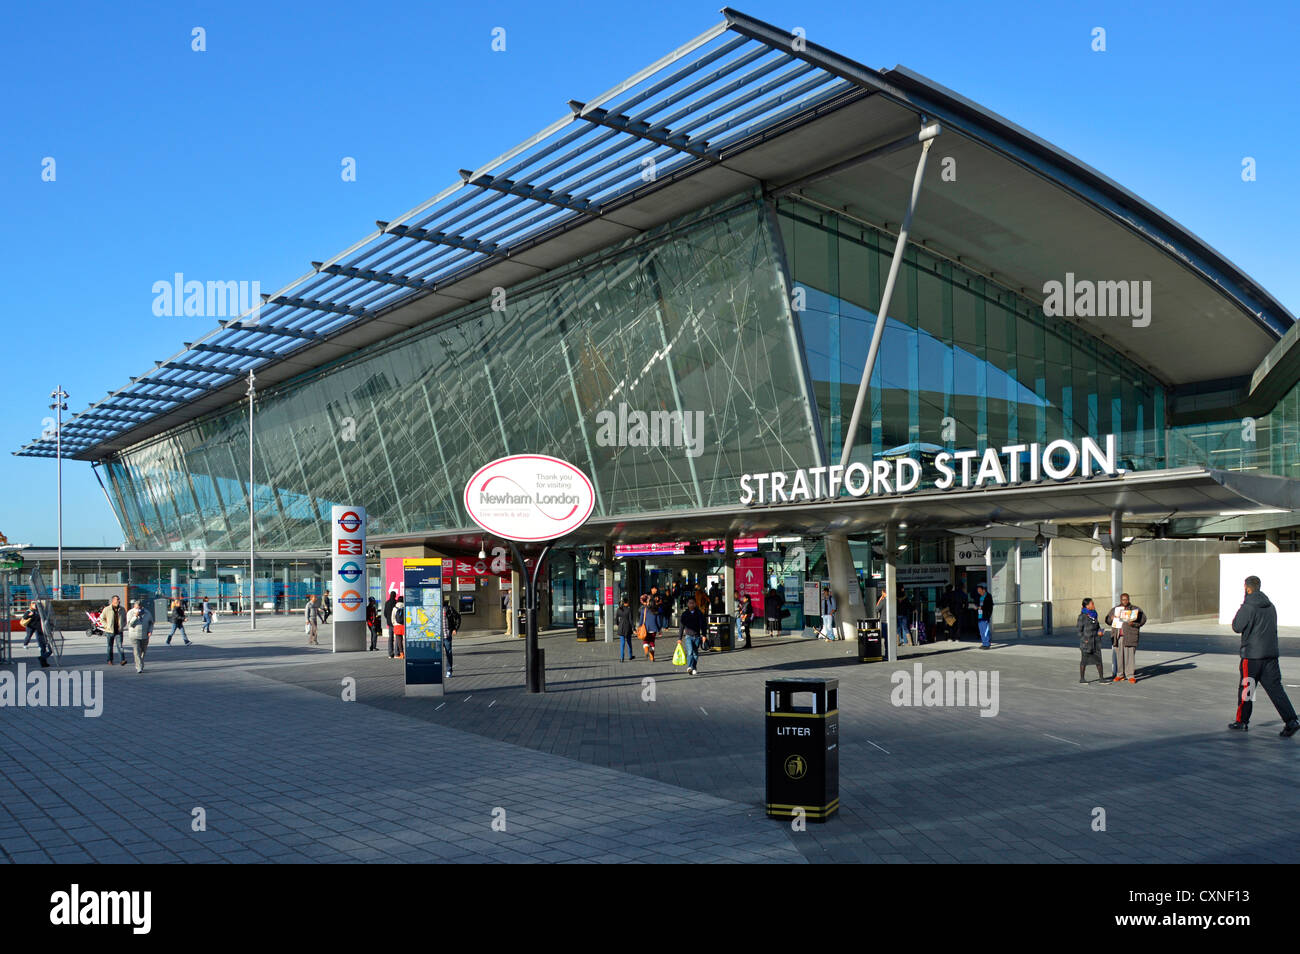 Stratford London moderne Bahnhof Fassade, die war der wichtigste Knotenpunkt des öffentlichen Verkehrs für die Olympischen Spiele 2012 in London Newham East London England Großbritannien Stockfoto